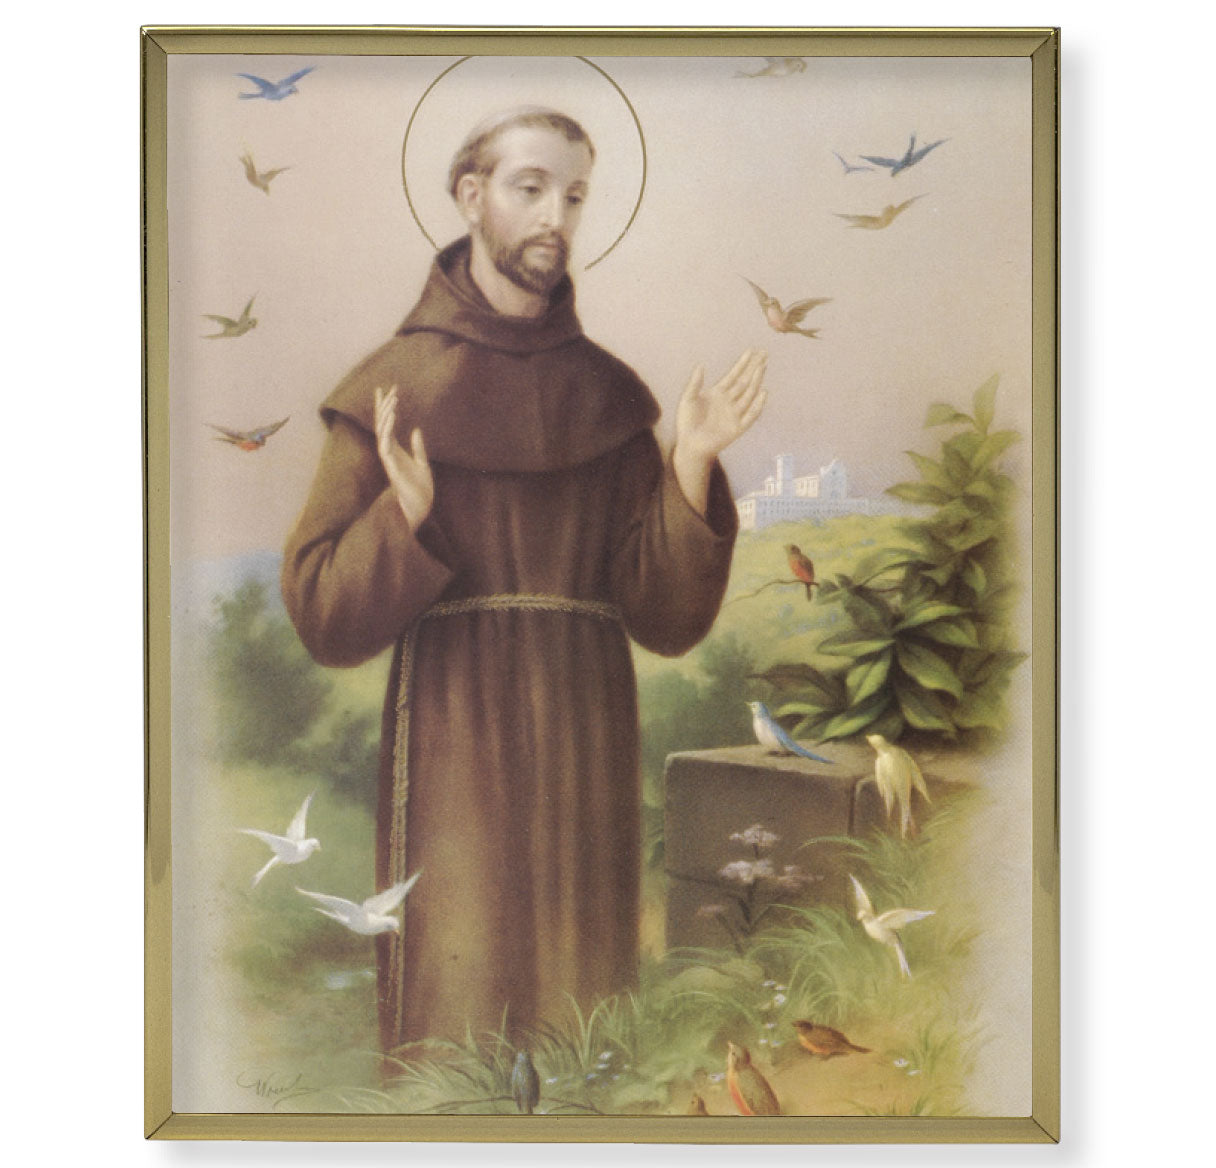 St. Francis Gold Framed Plaque Art